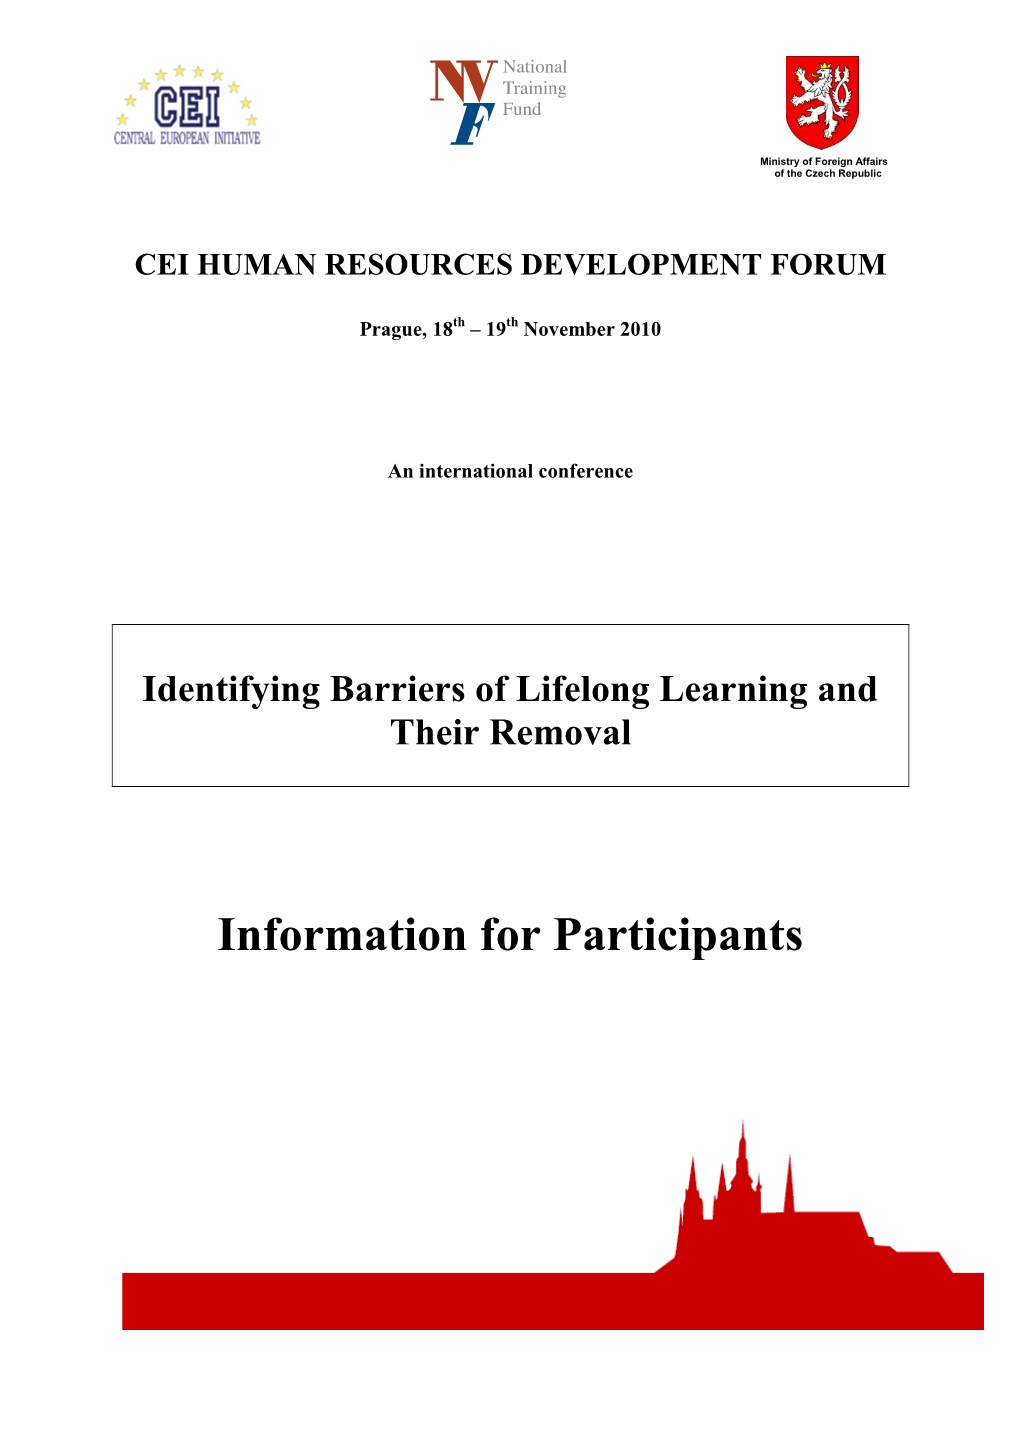 Participants' Info